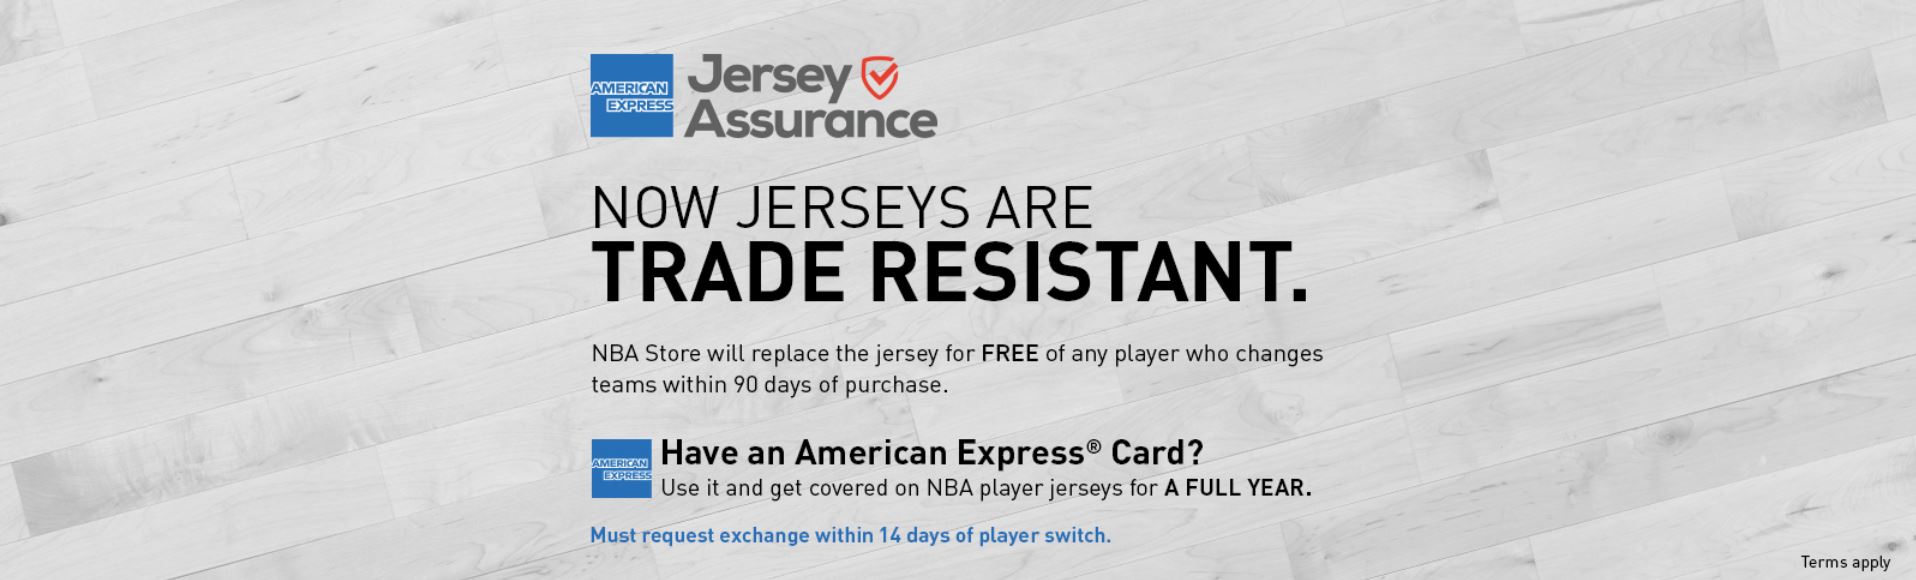 Jersey Assurance